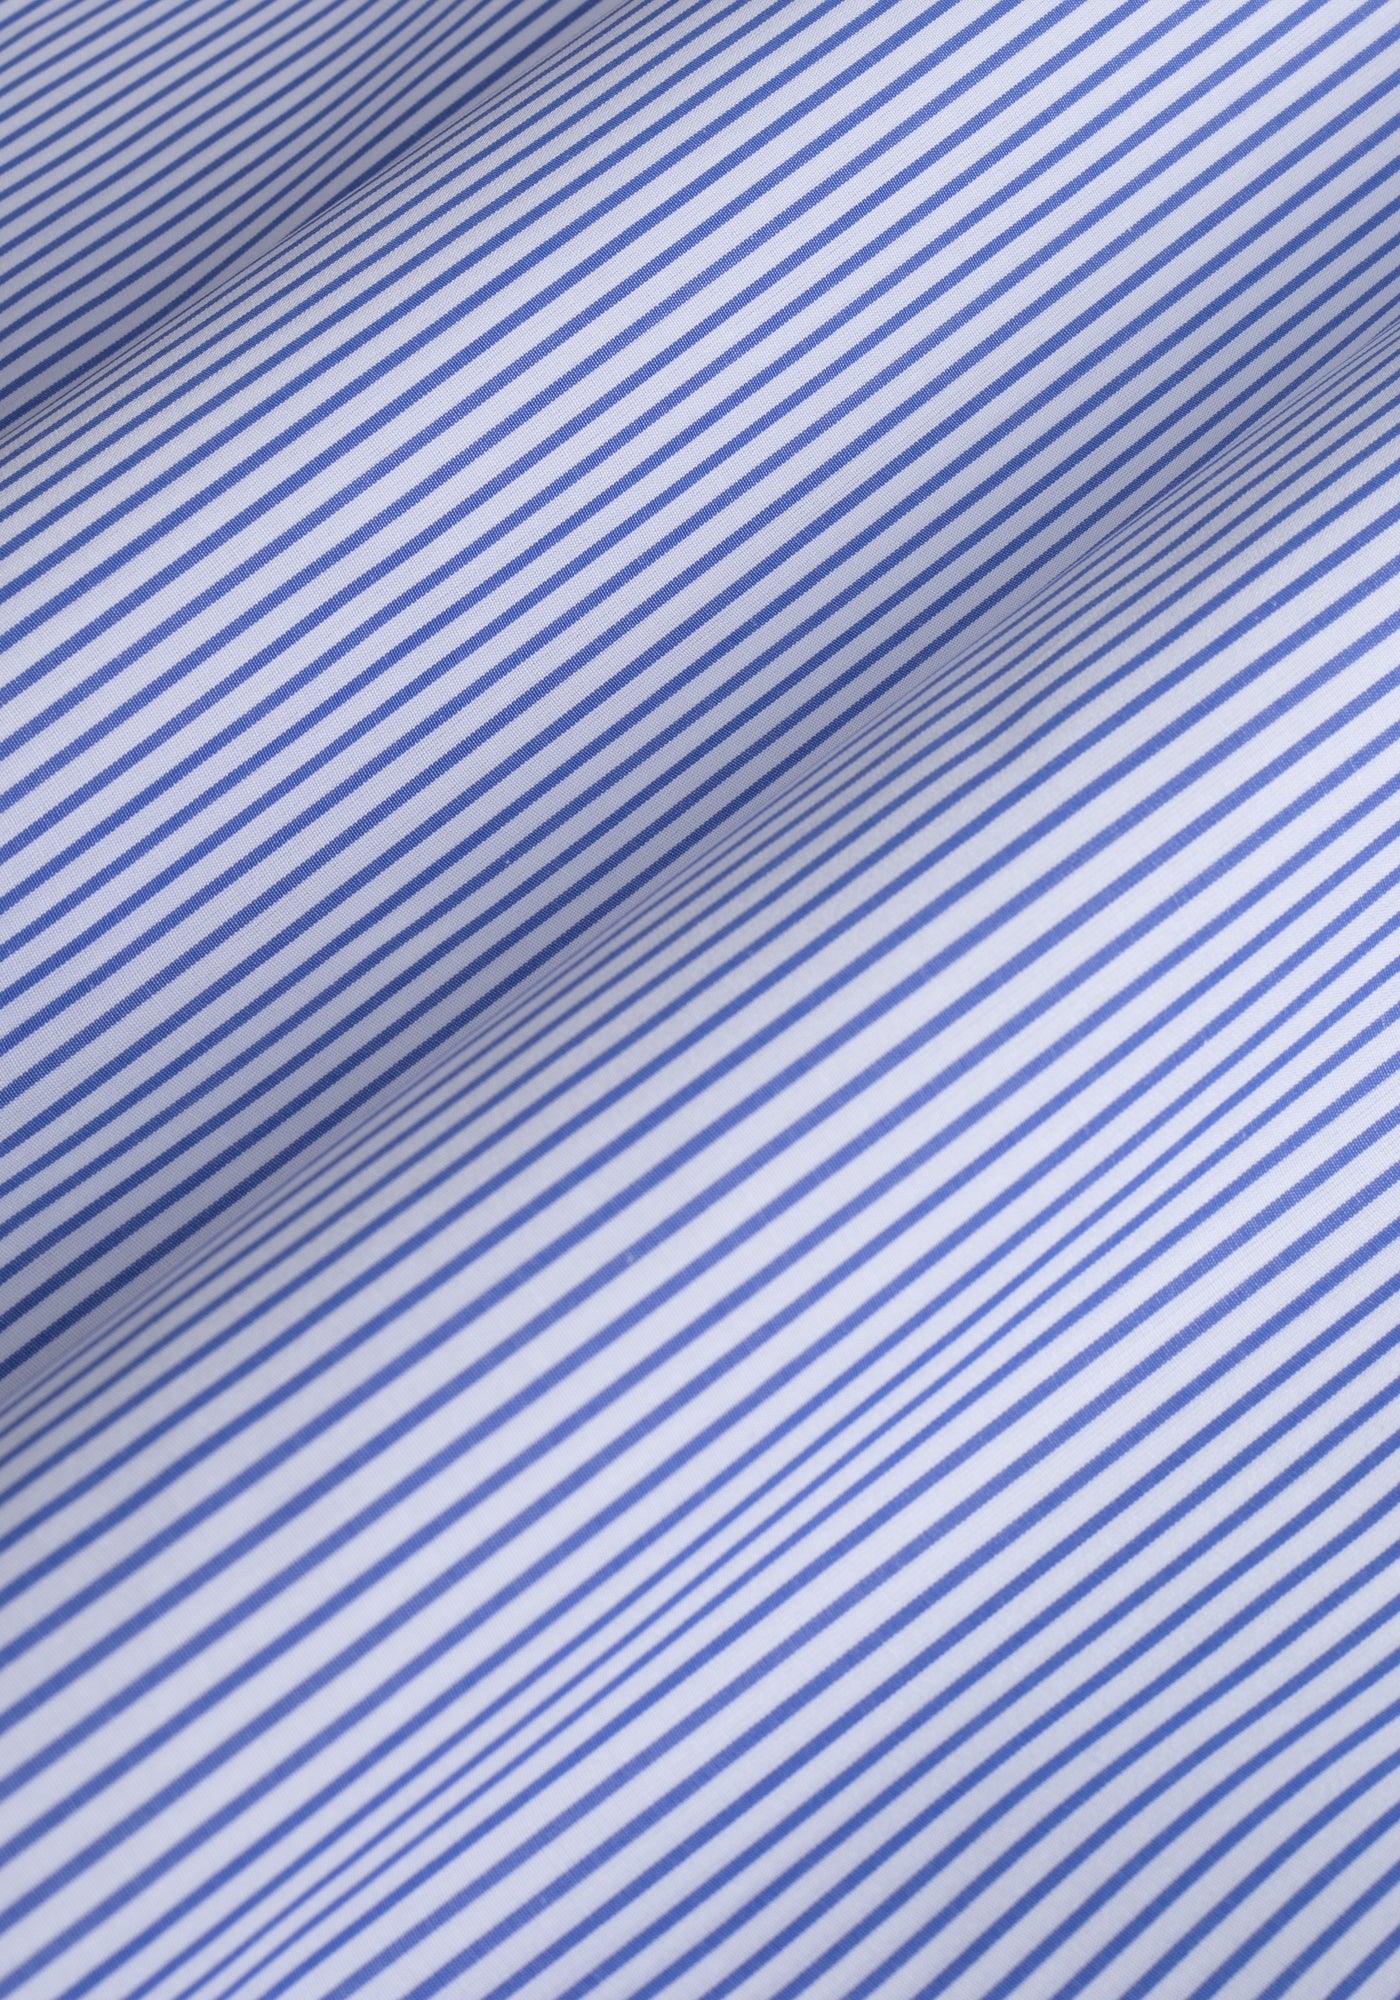 Deep Blue Stripe Poplin Shirt